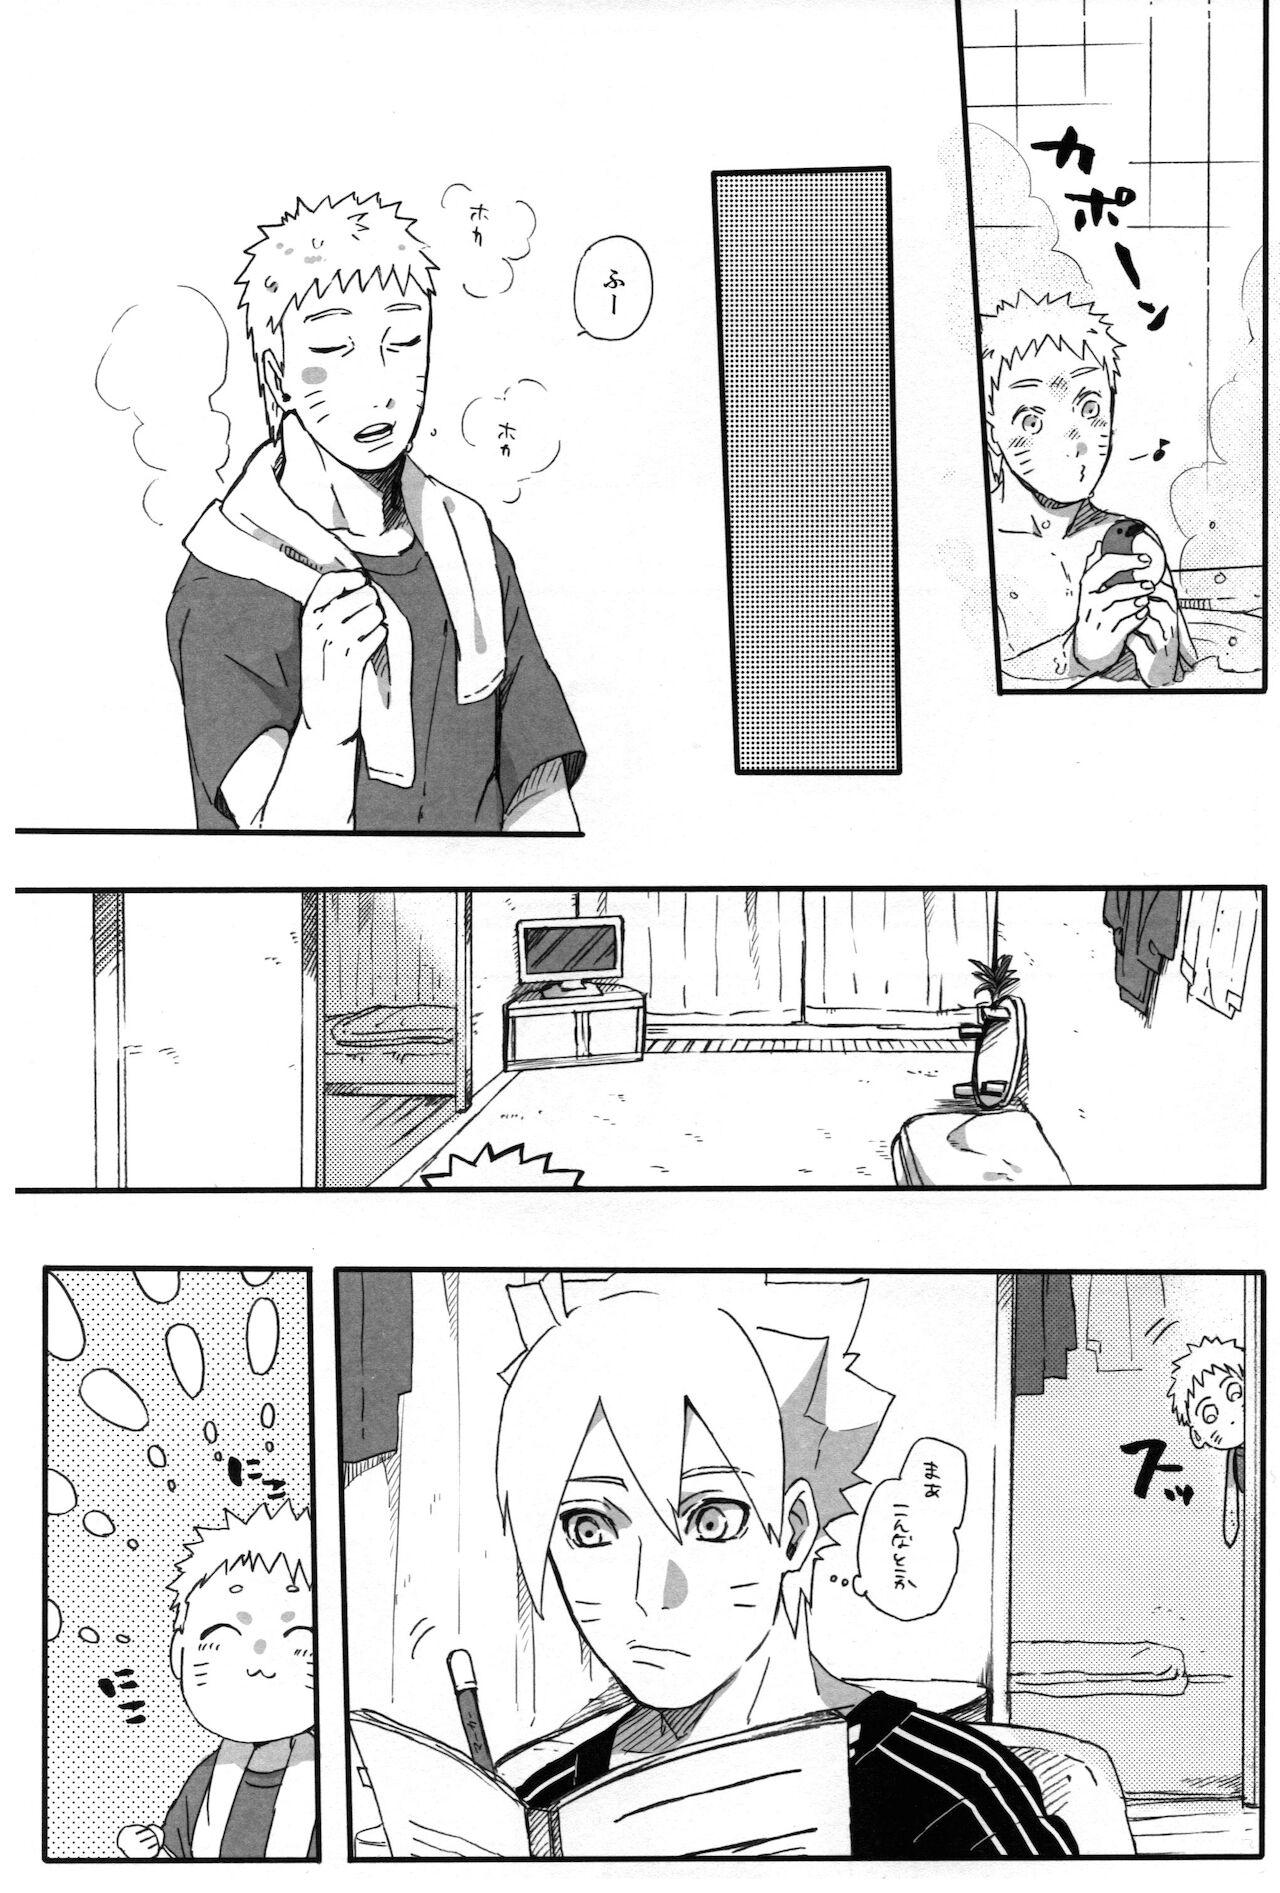 Jerking Off Getsuyou wa itsumo chikoku sunzen - Naruto Lolicon - Page 12